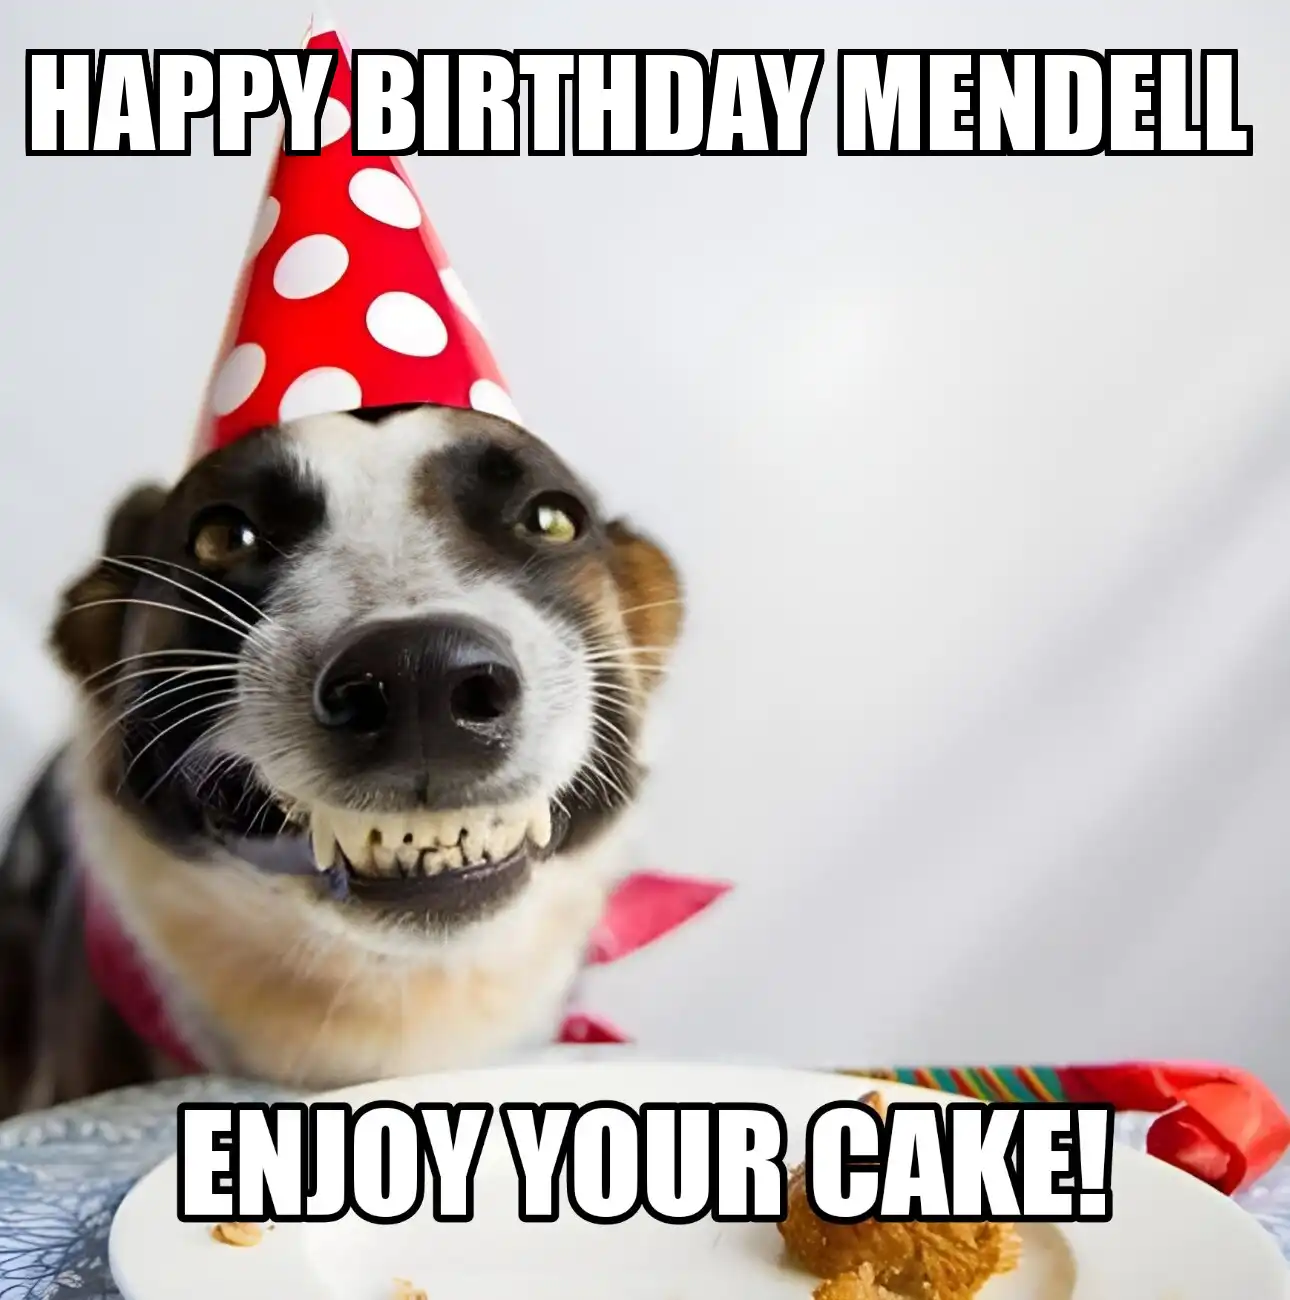 Happy Birthday Mendell Enjoy Your Cake Dog Meme